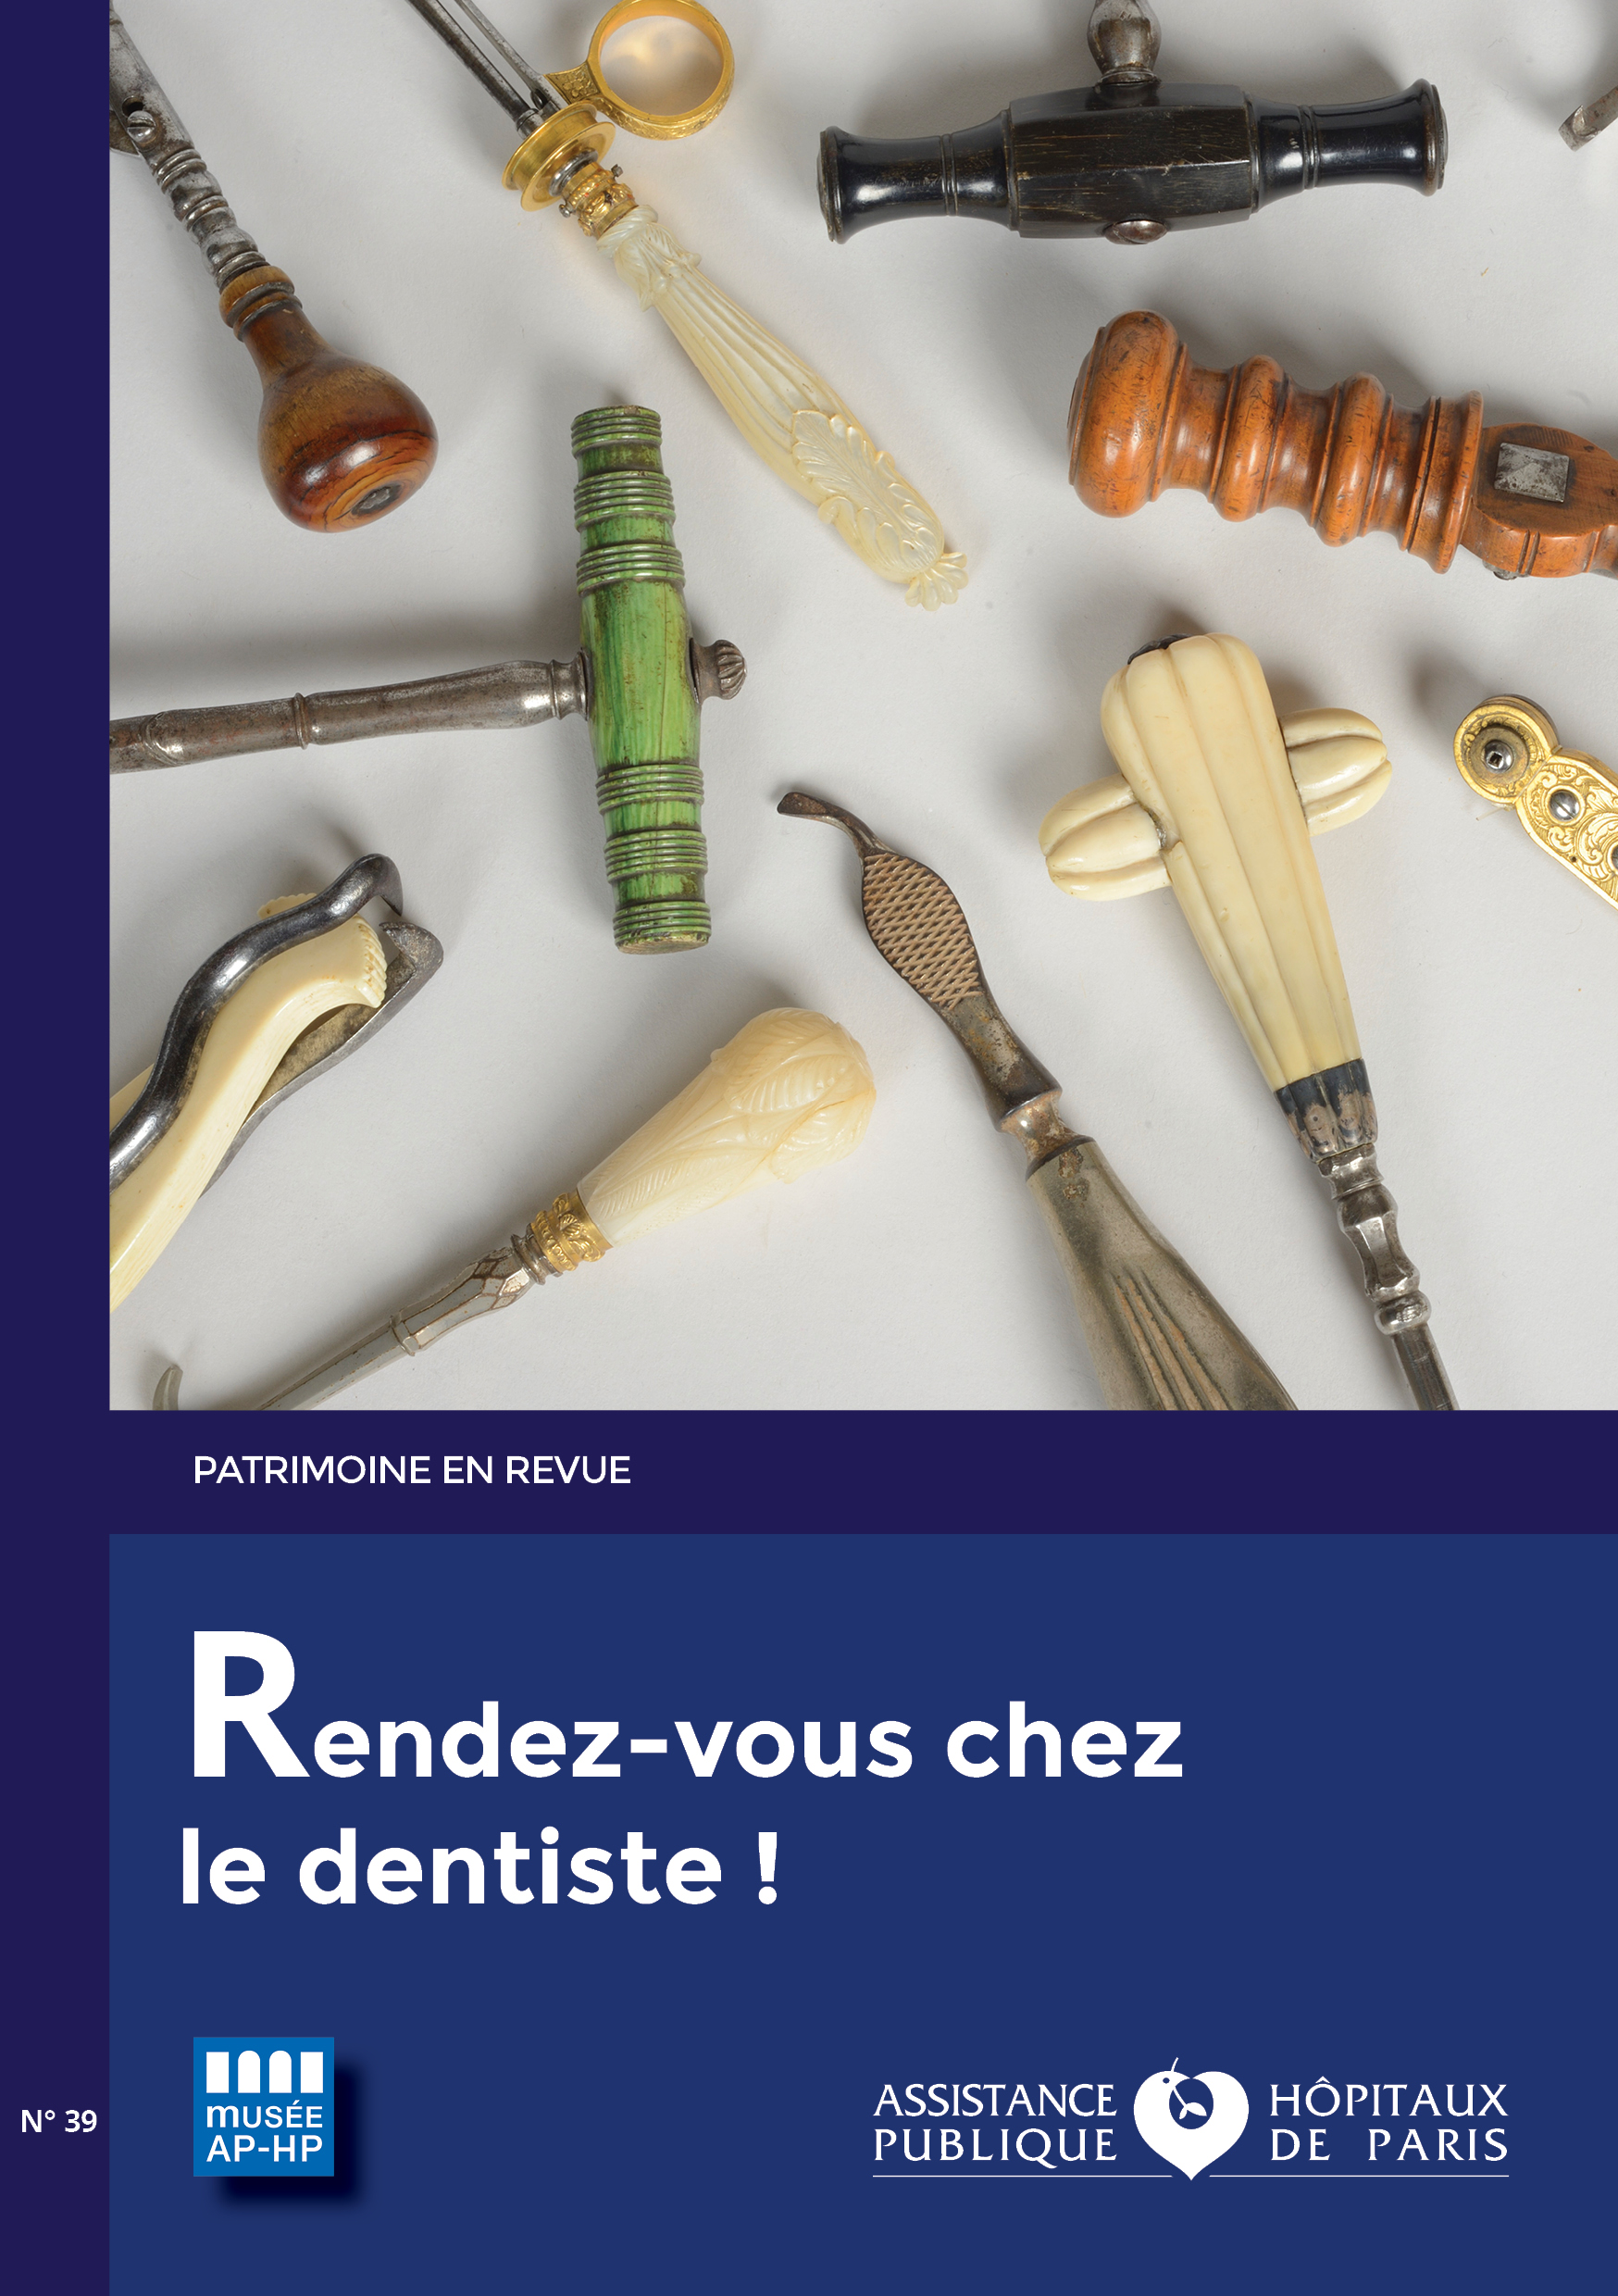 2021_Patrimoine en revue, "Rendez-vous chez le dentiste"